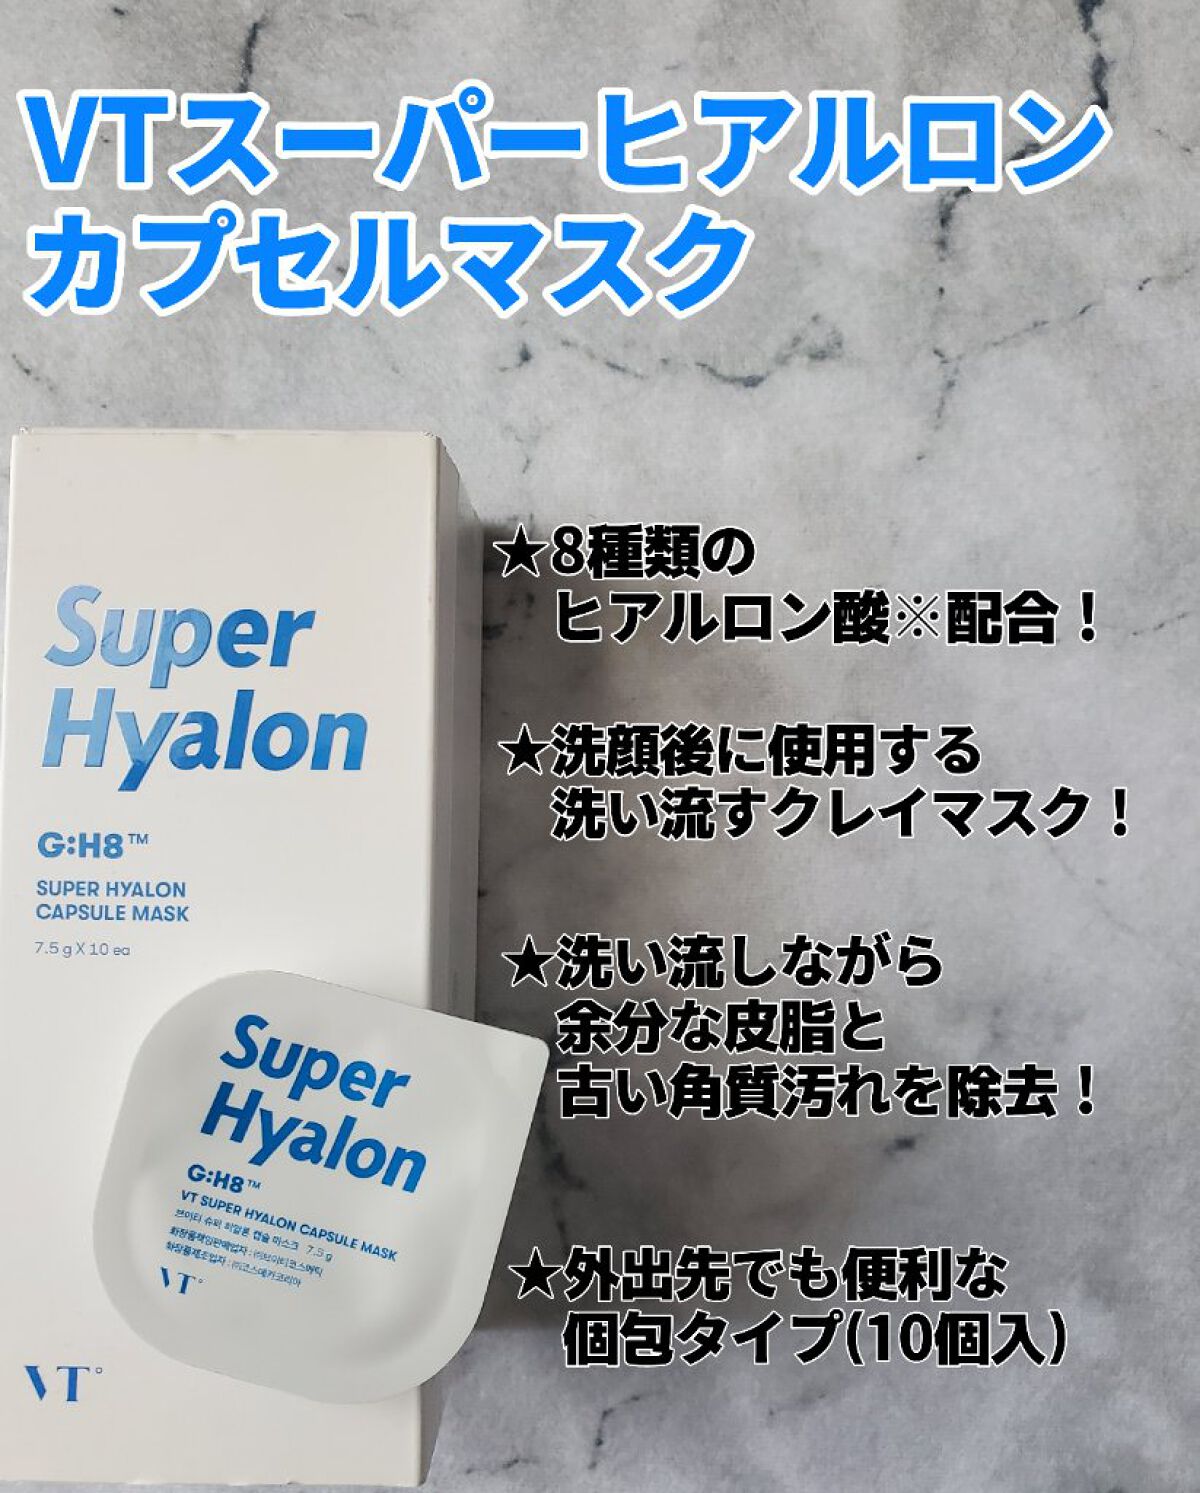 ☆新品 未使用☆ Super Hylon スーパーヒアルロンカプセルマスク